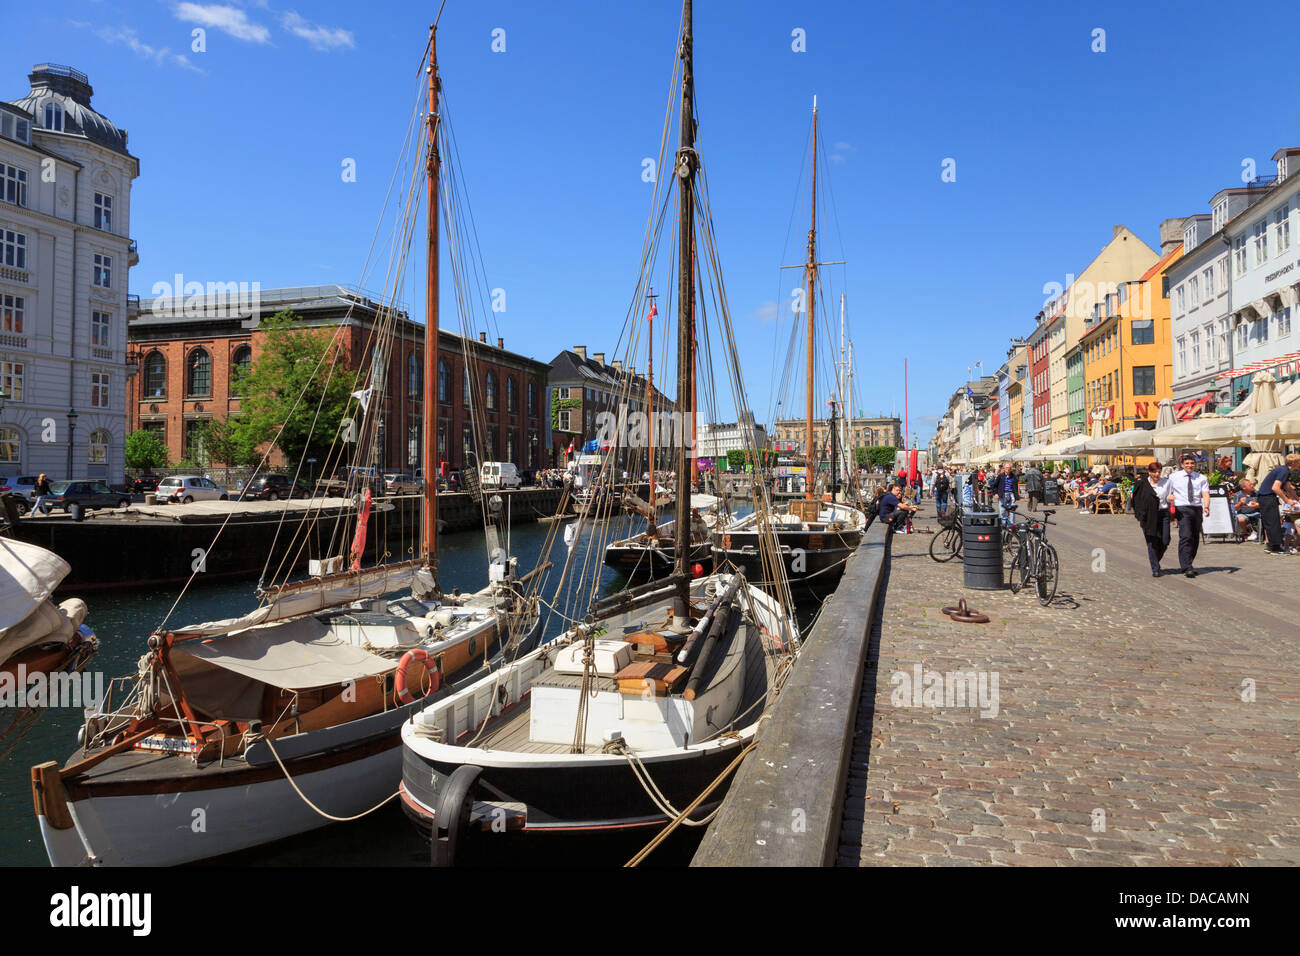 Vecchie barche ormeggiate sul canal dal lungomare pedonale strada con caffè all'aperto a Nyhavn, Copenaghen, Zelanda, Danimarca Foto Stock